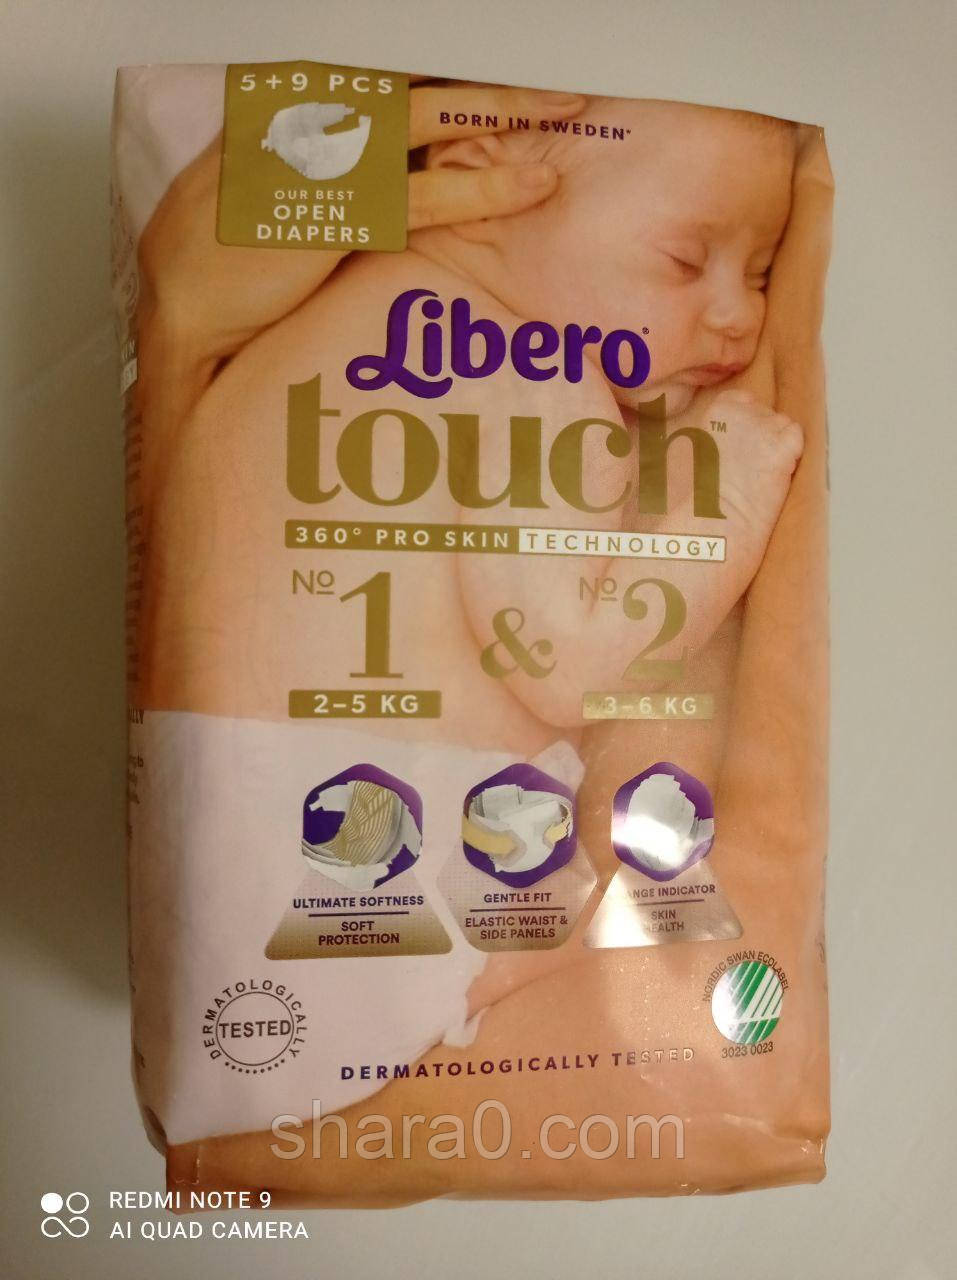 Підгузки дитячі для новонароджених Libero Touch розмір №1-2 на 2-6 кг 14 штук